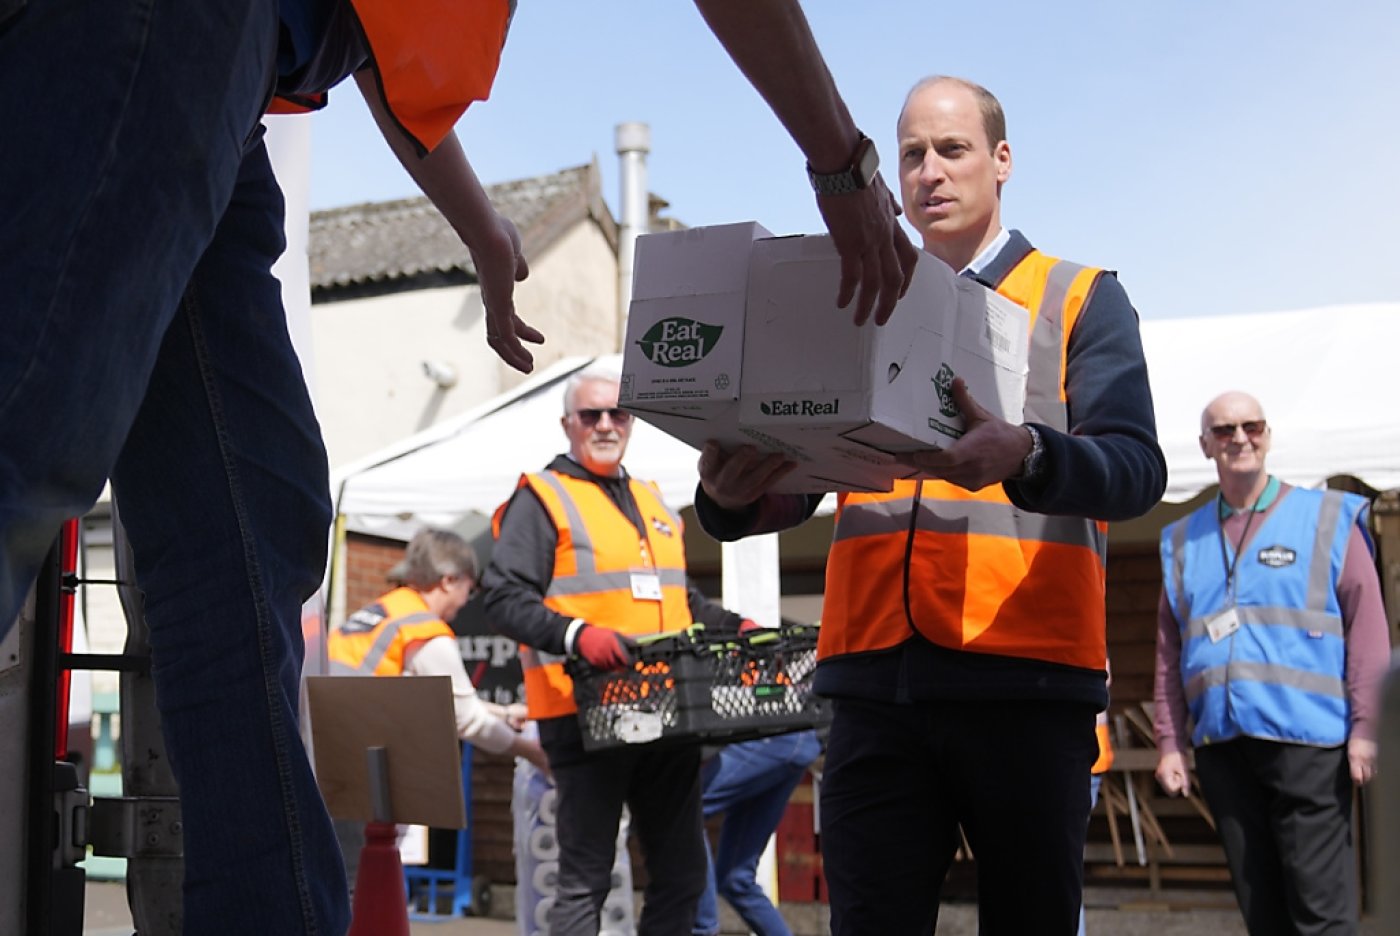 Le prince William est photographié jeudi aidant à décharger un camion de Surplus for Supper, une association de redistribution de surplus alimentaires, située dans le Surrey, à l'ouest de Londres. KEYSTONE